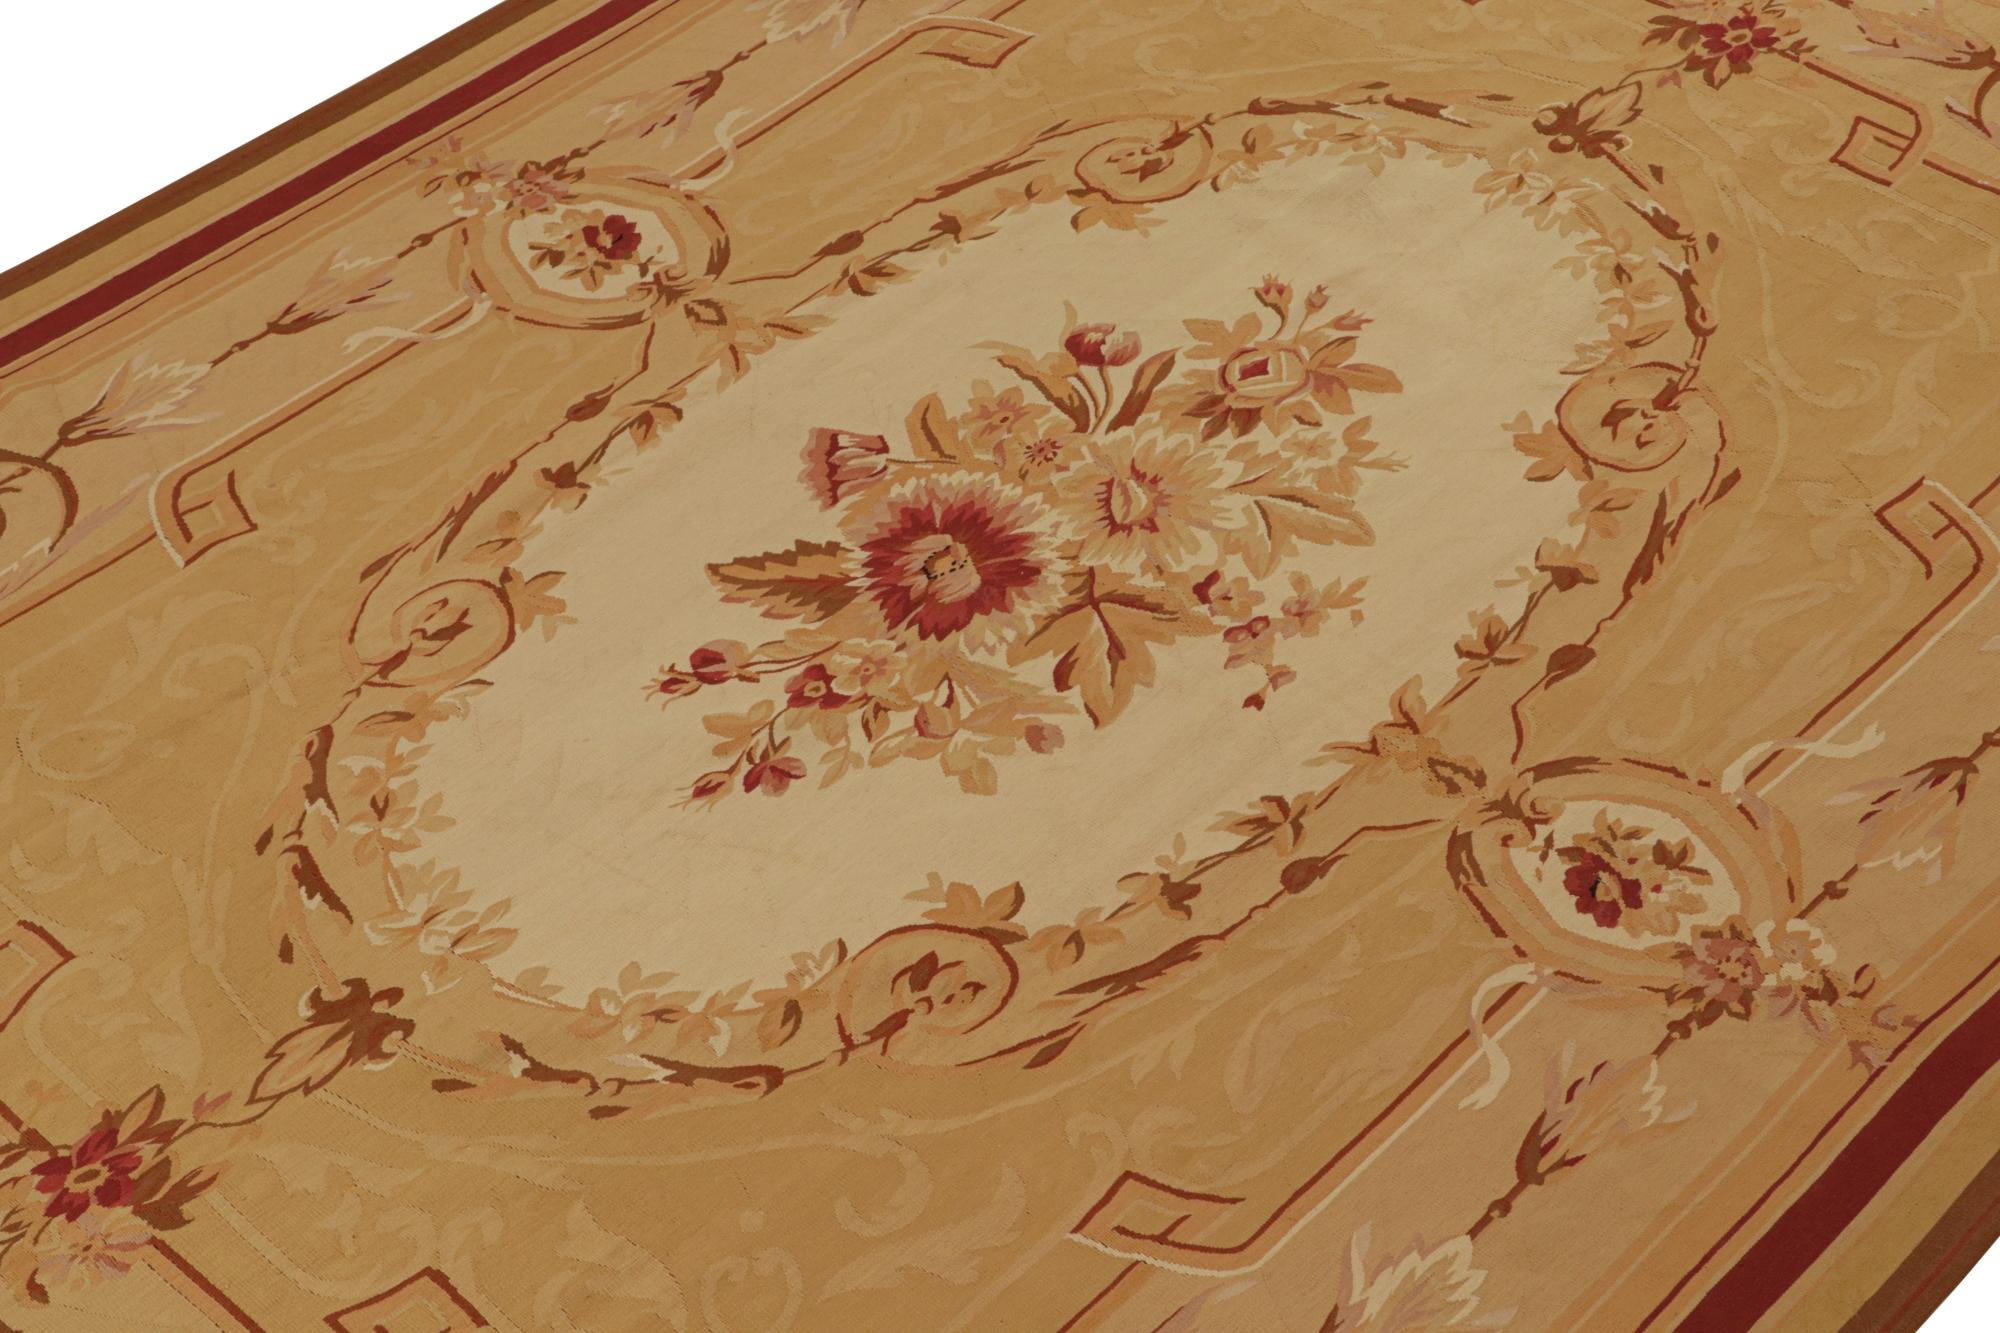 Ce tissage plat 9x12 de la collection de tapis européens de Rug & Kilim est une version contemporaine des tapis et tapisseries d'Aubusson du XVIIIe siècle. Tissé à la main dans une laine de qualité, cette pièce est issue des premières productions du